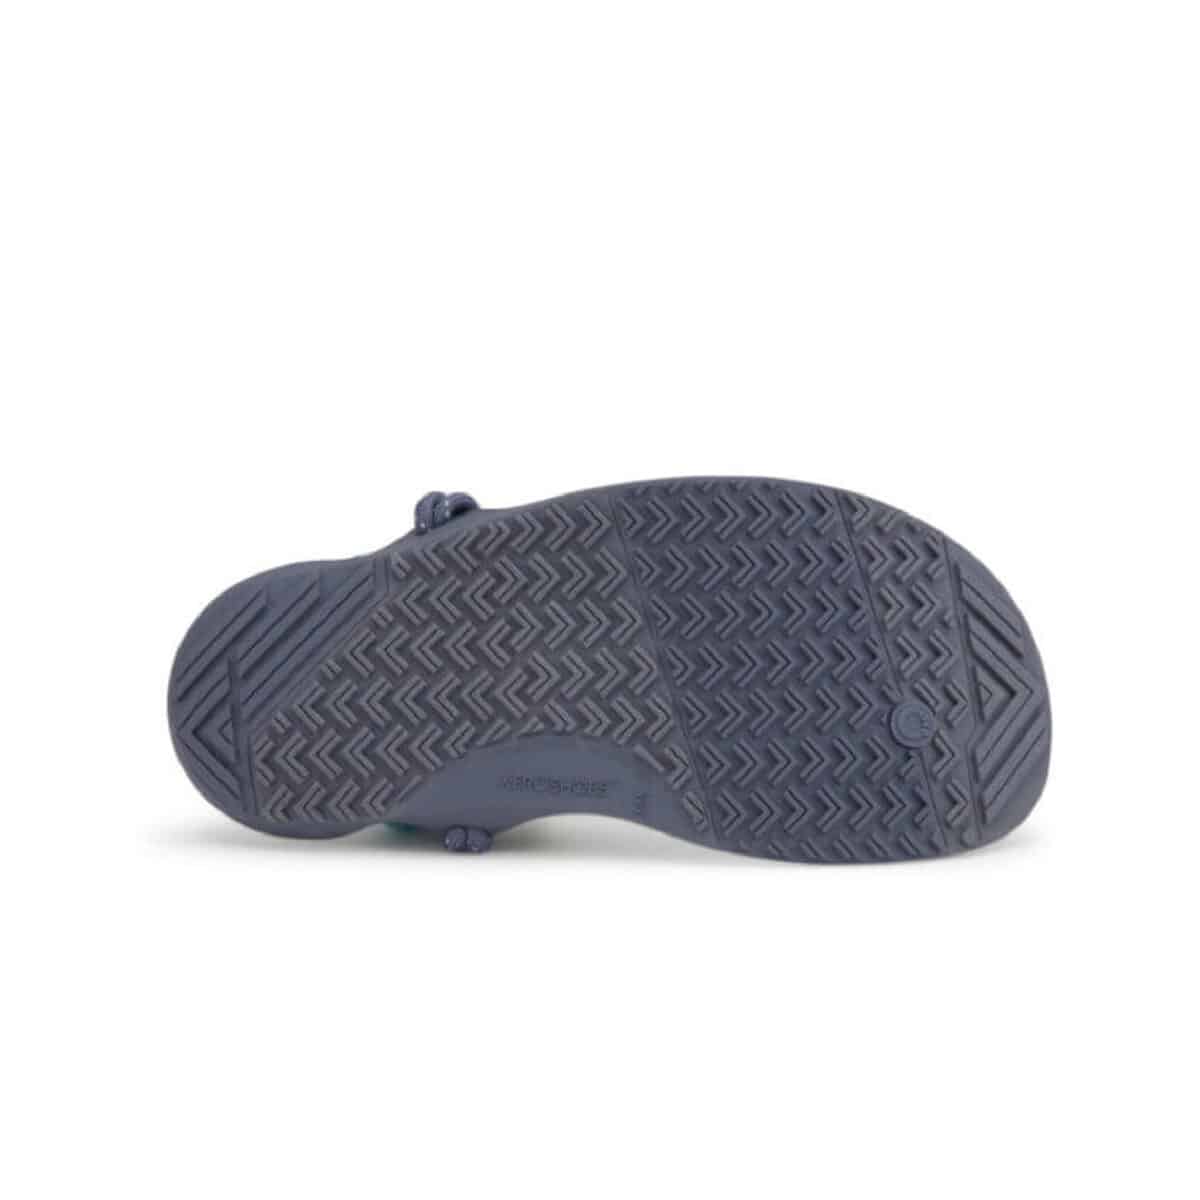 סנדל ספורט מים לנשים Xero Aqua Cloud Sandal